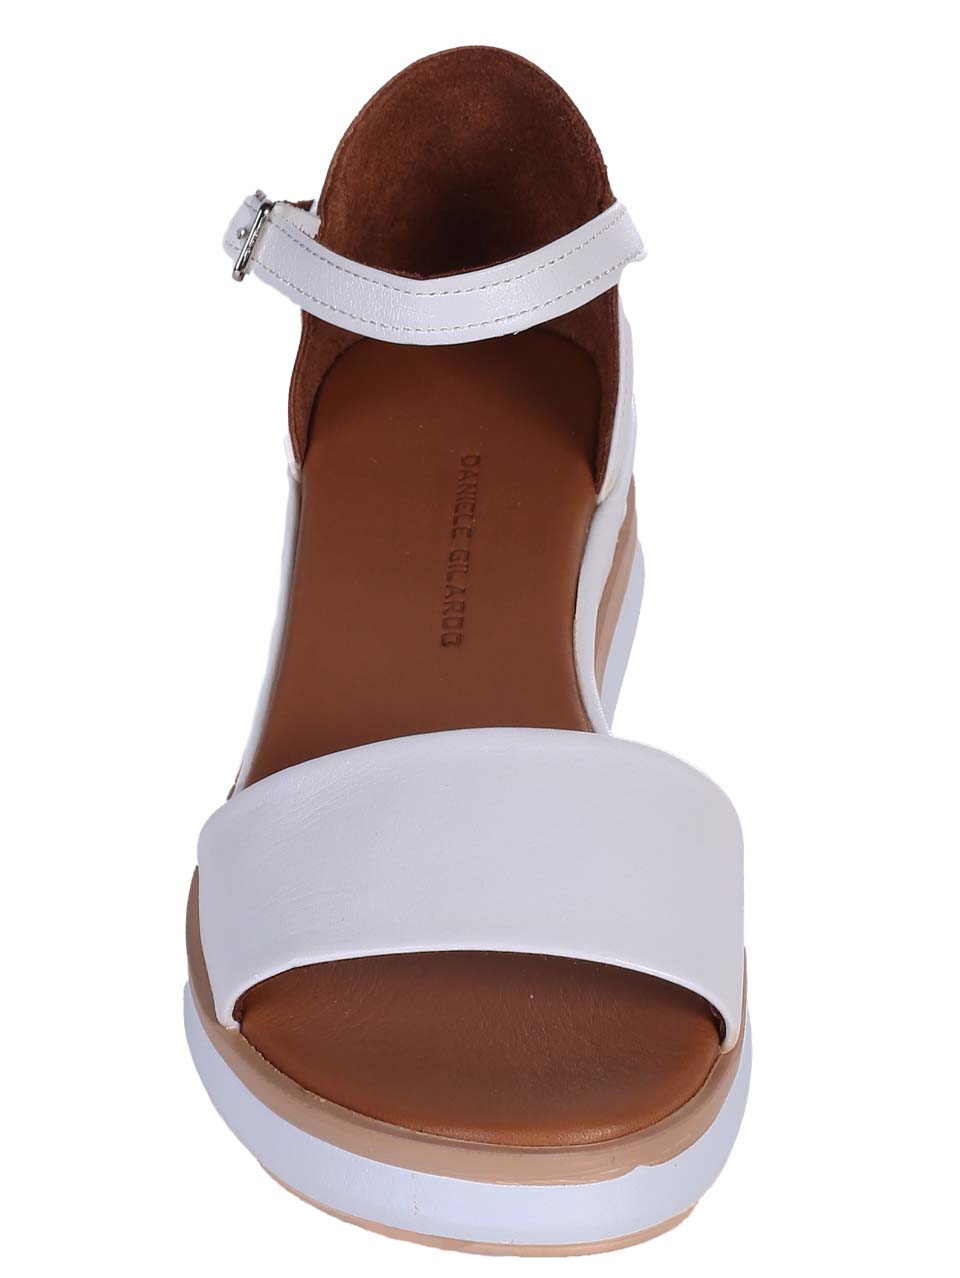 Ежедневни дамски сандали на платформа от естествена кожа в бяло 4AT-24346 white